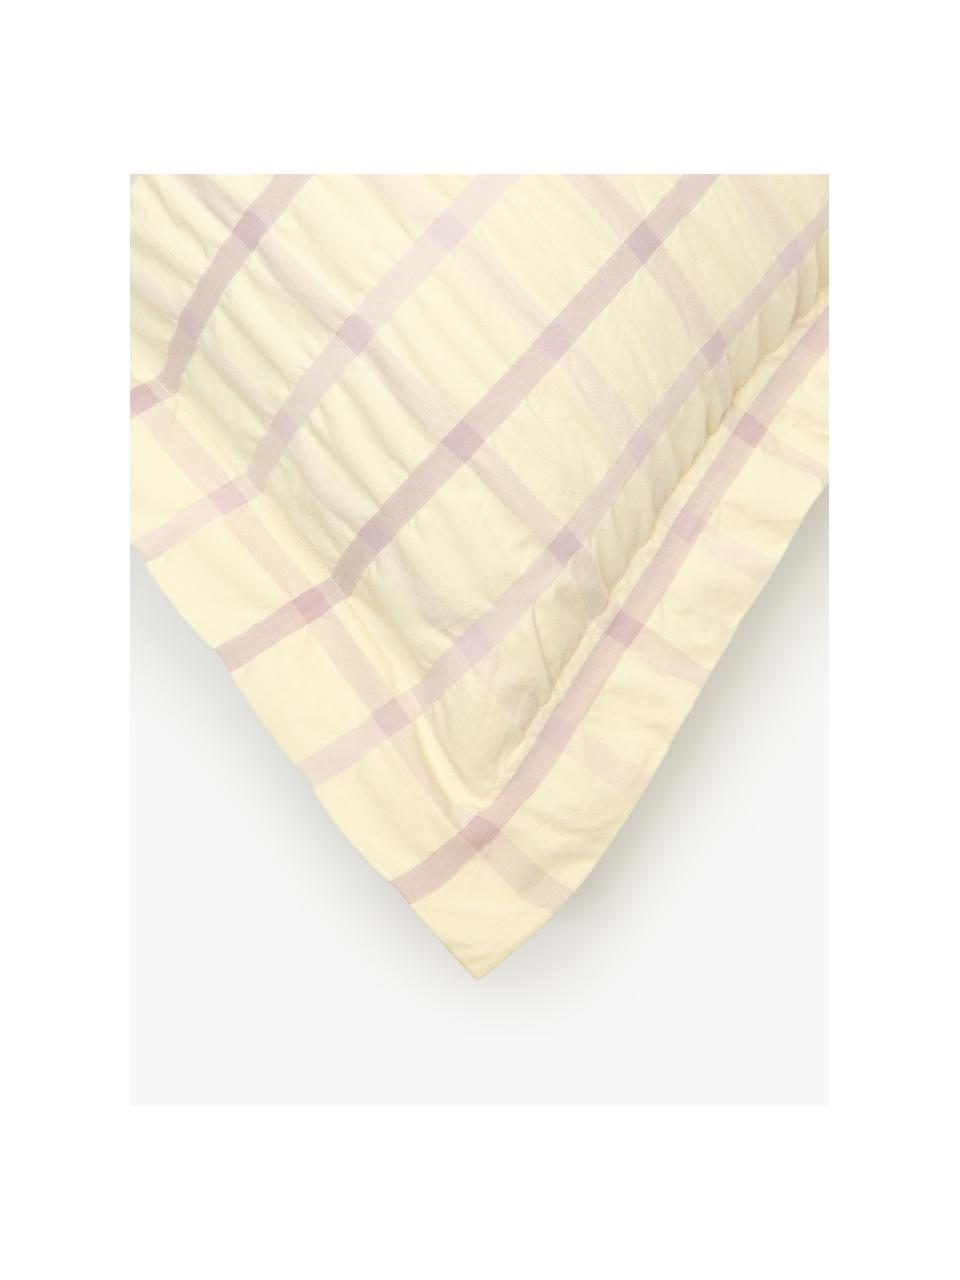 Poszewka na poduszkę z tkaniny typu seersucker Leonita, Żółty, lila, S 40 x D 80 cm